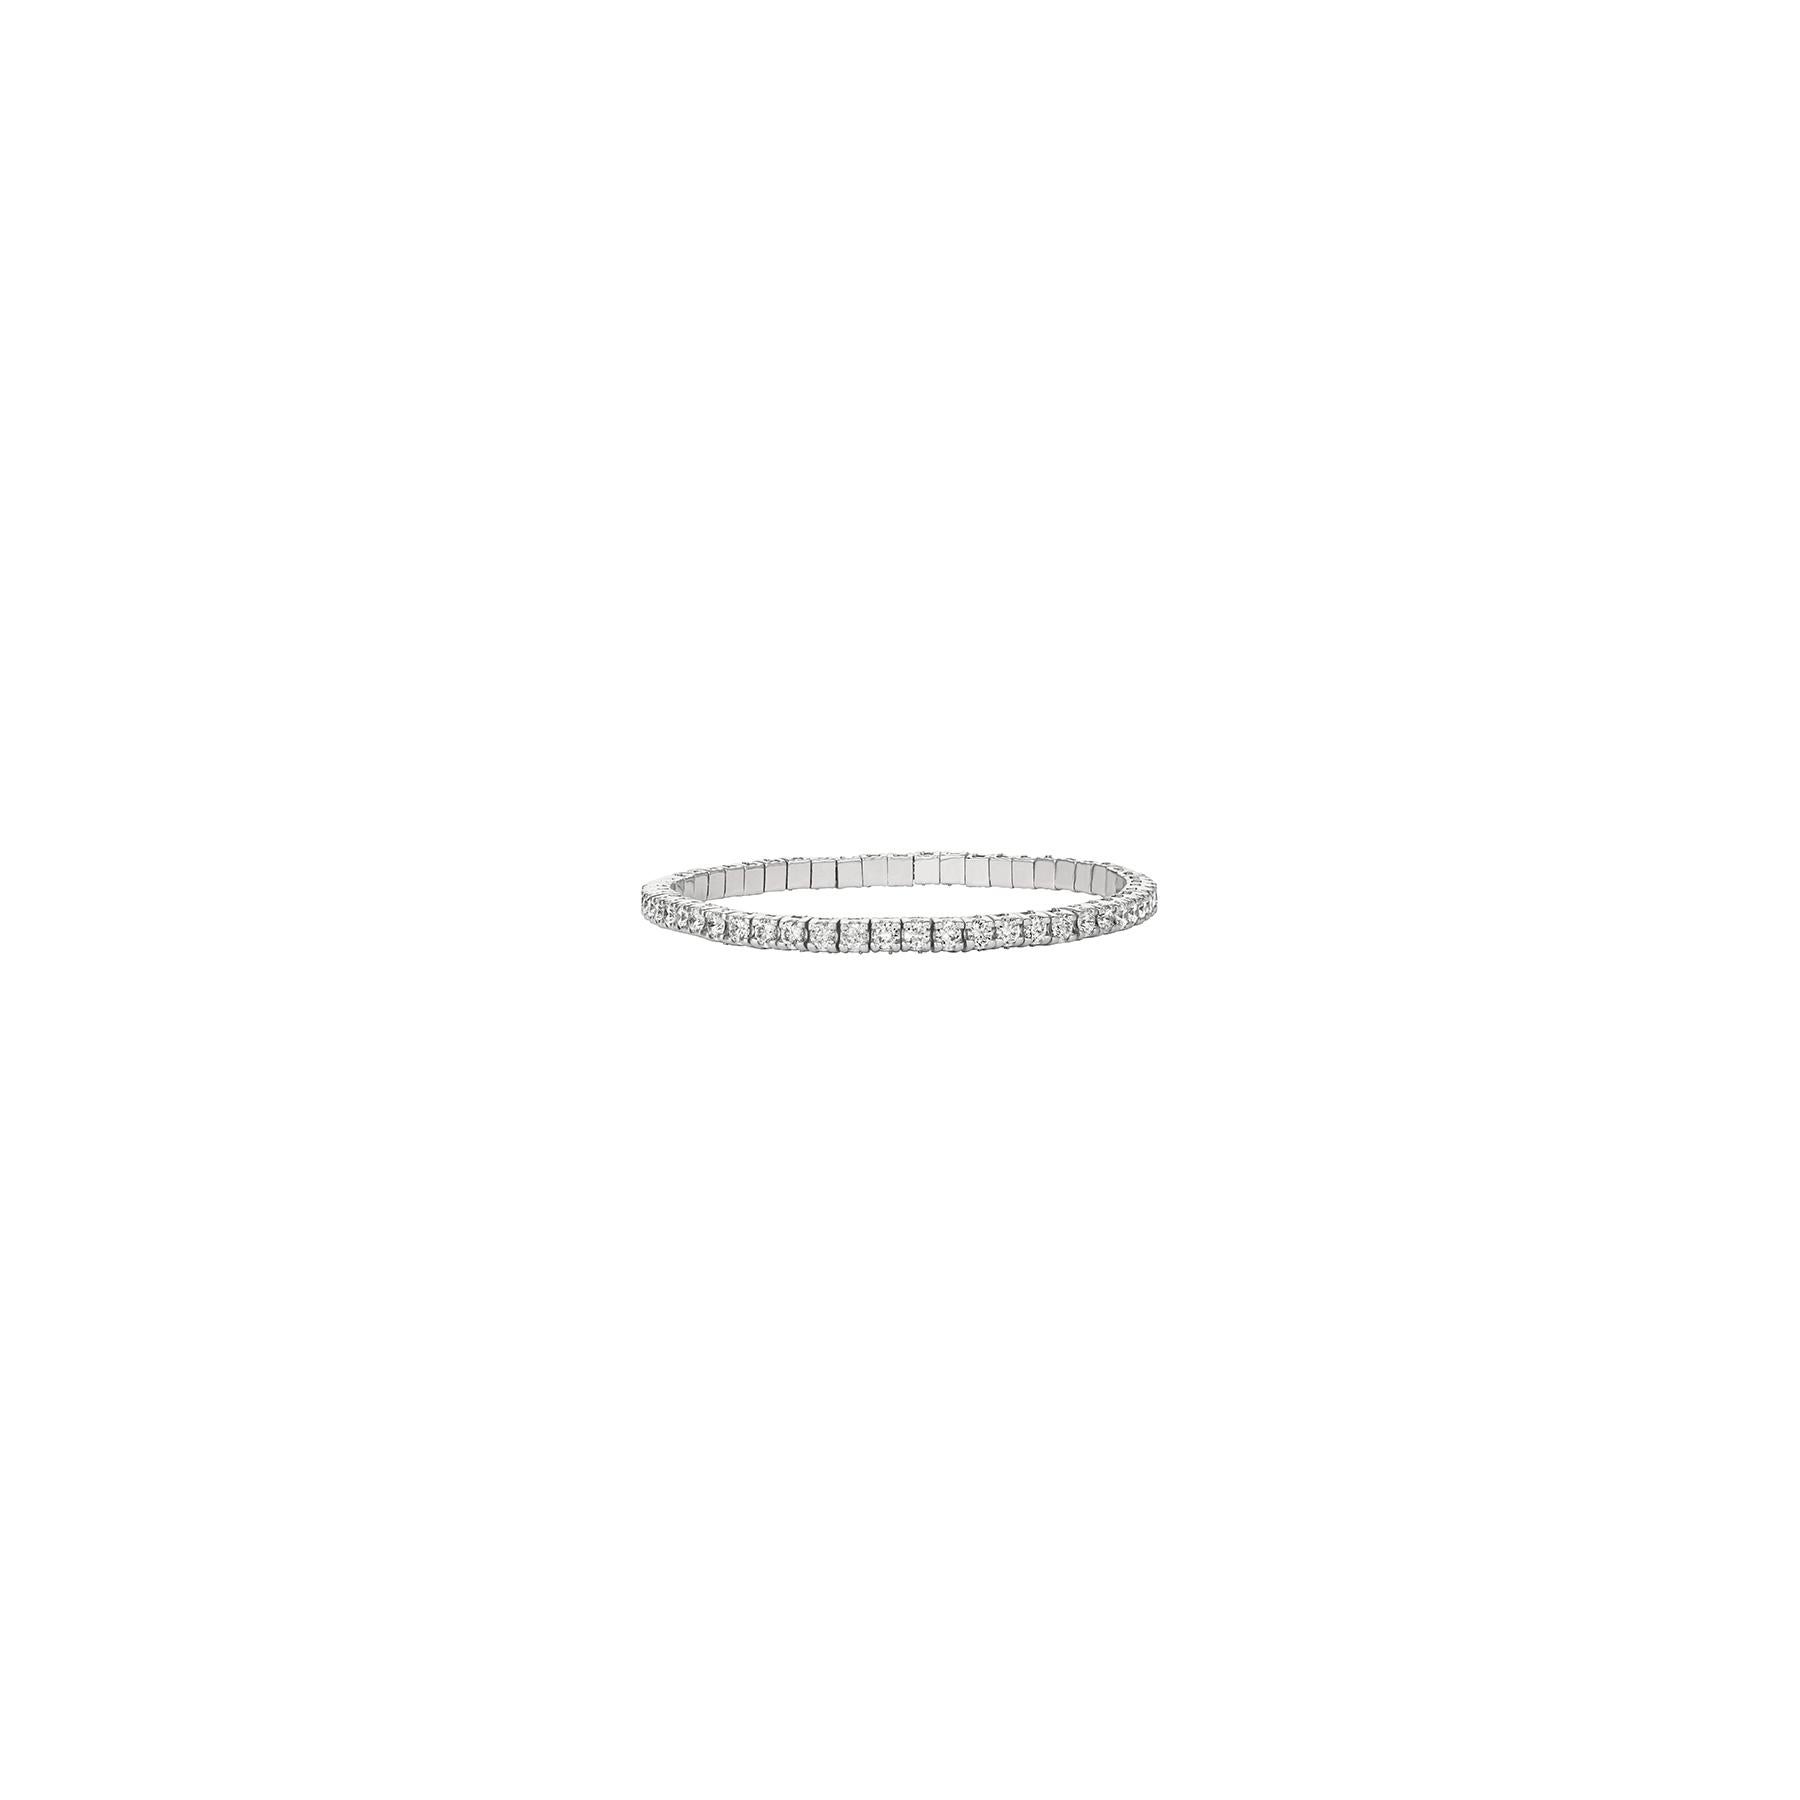 9.00 Carat Natural Diamond Stretch Style Bracelet G-H SI 14K White Gold

Diamants 100% Nature, non rehaussés de quelque manière que ce soit
9.00CT
G-H 
SI  
Or blanc 14K, serti clos, 16.5 Grammes
7 pouces de longueur, 3/16 pouces de largeur
43